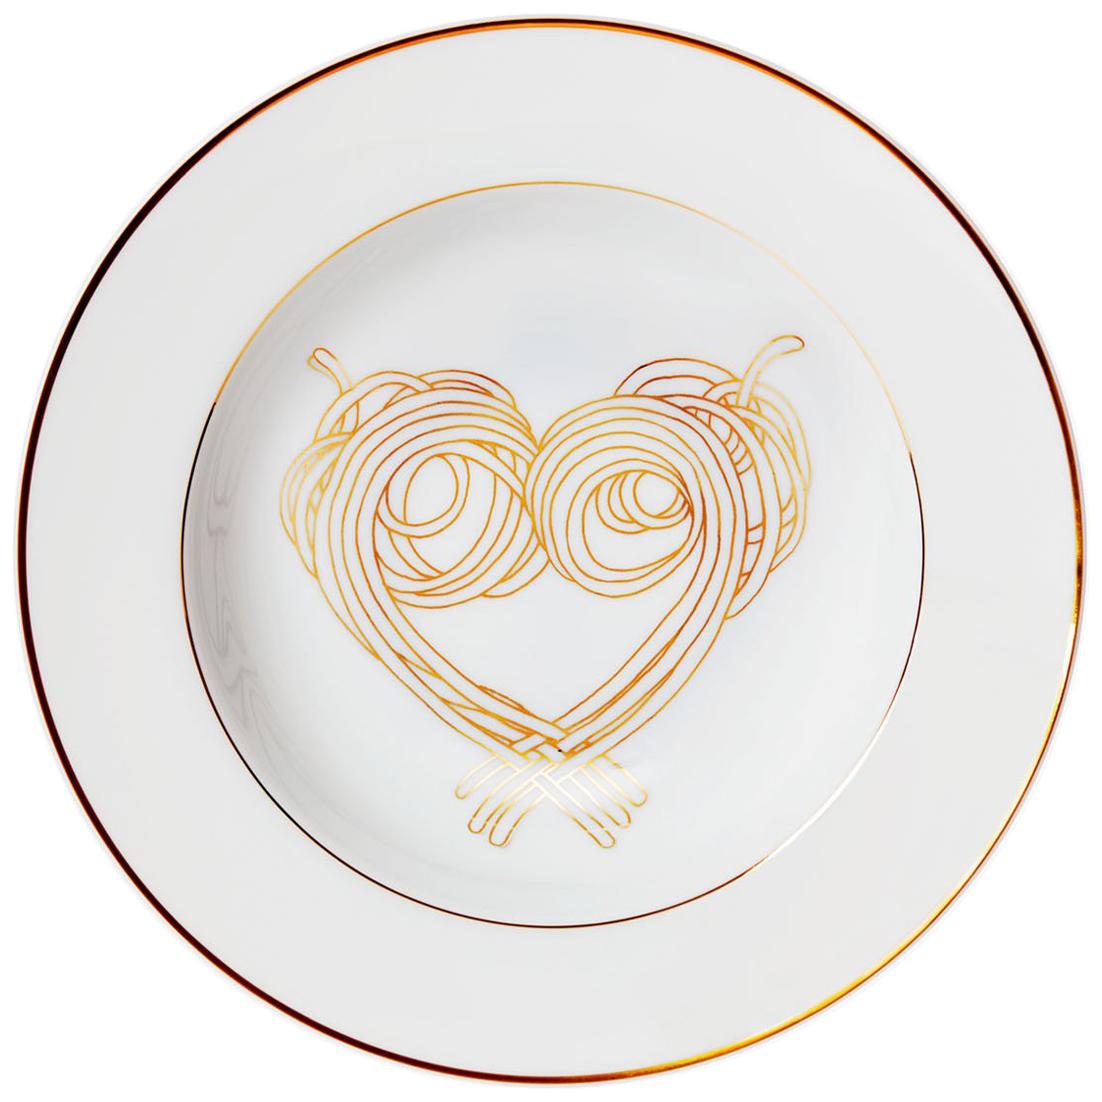 Dinner Pasta Porcelain Plate with gold Collection "Le Coeur De La Mamma" For Sale